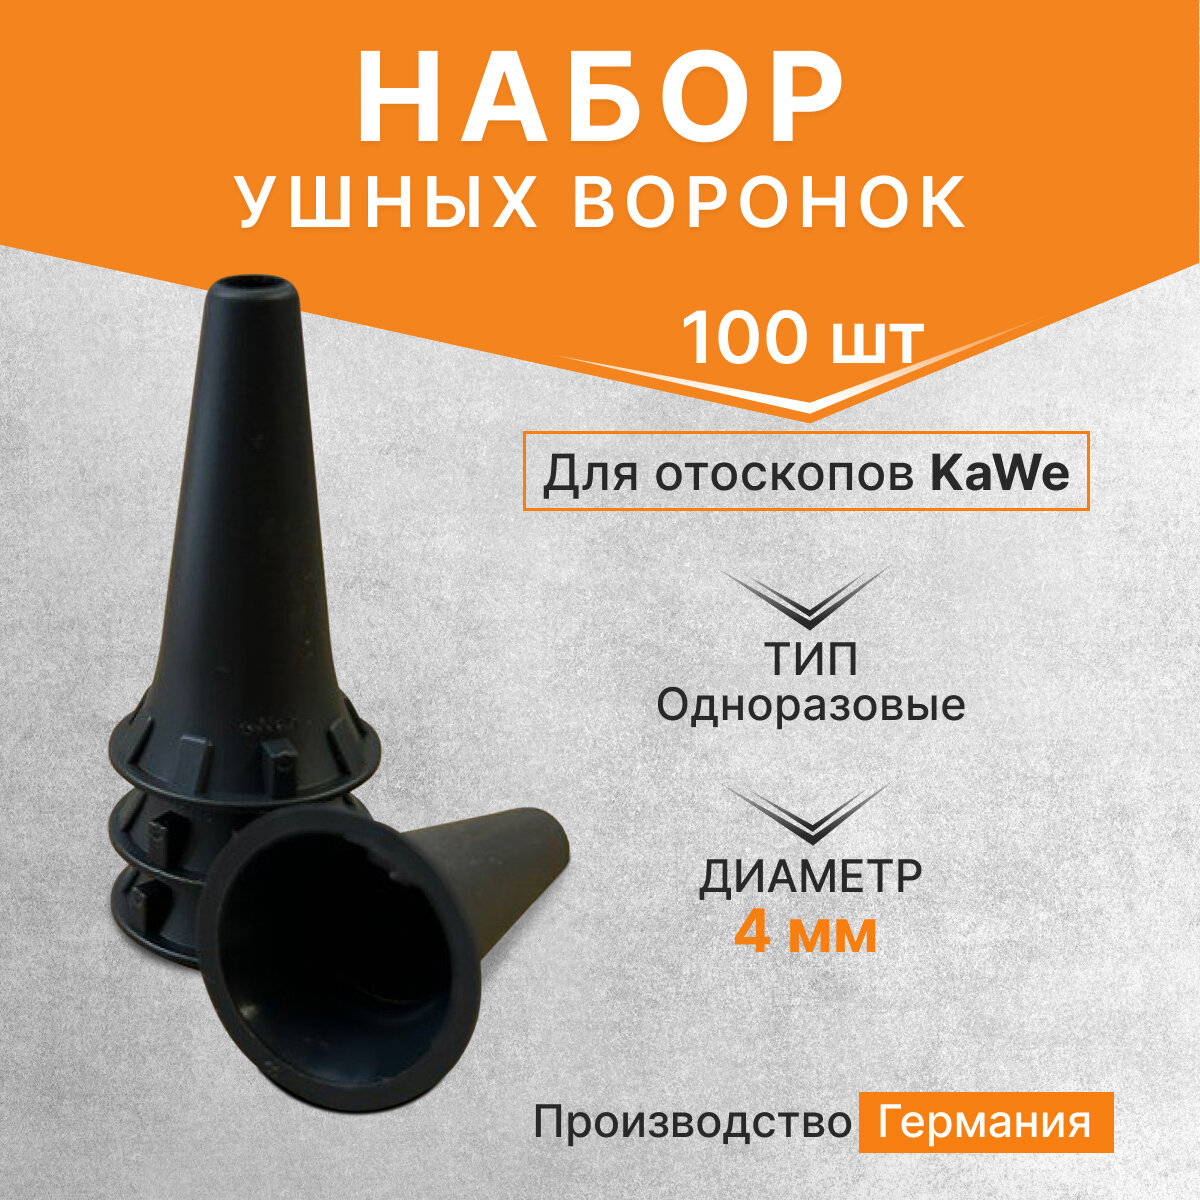 Набор одноразовых ушных воронок для отоскопа KaWe, диаметр 4,0 мм, 100 шт